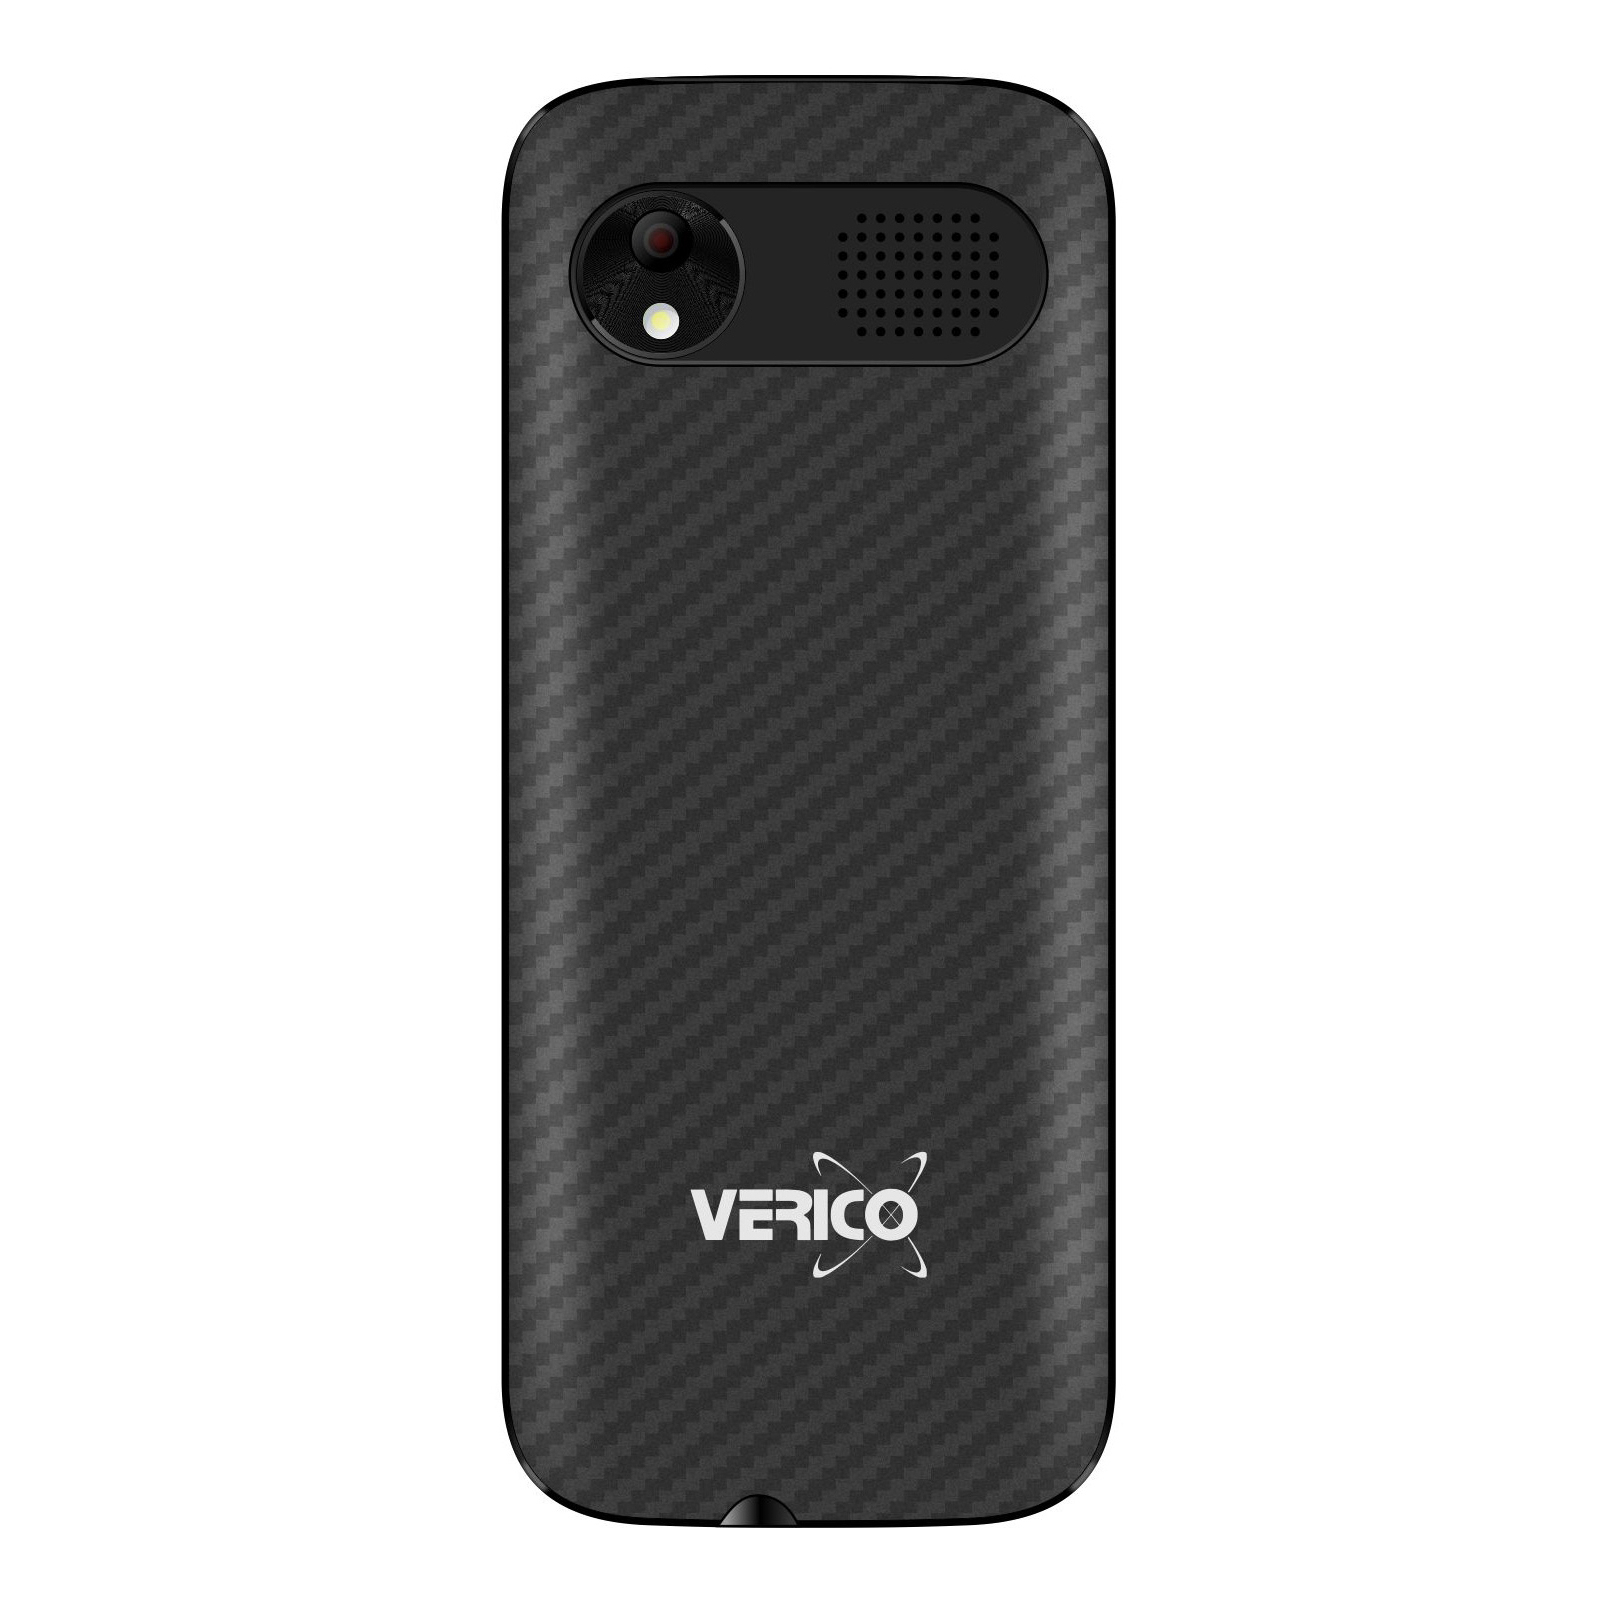 Мобильный телефон Verico Carbon M242 Black (4713095606656) изображение 2